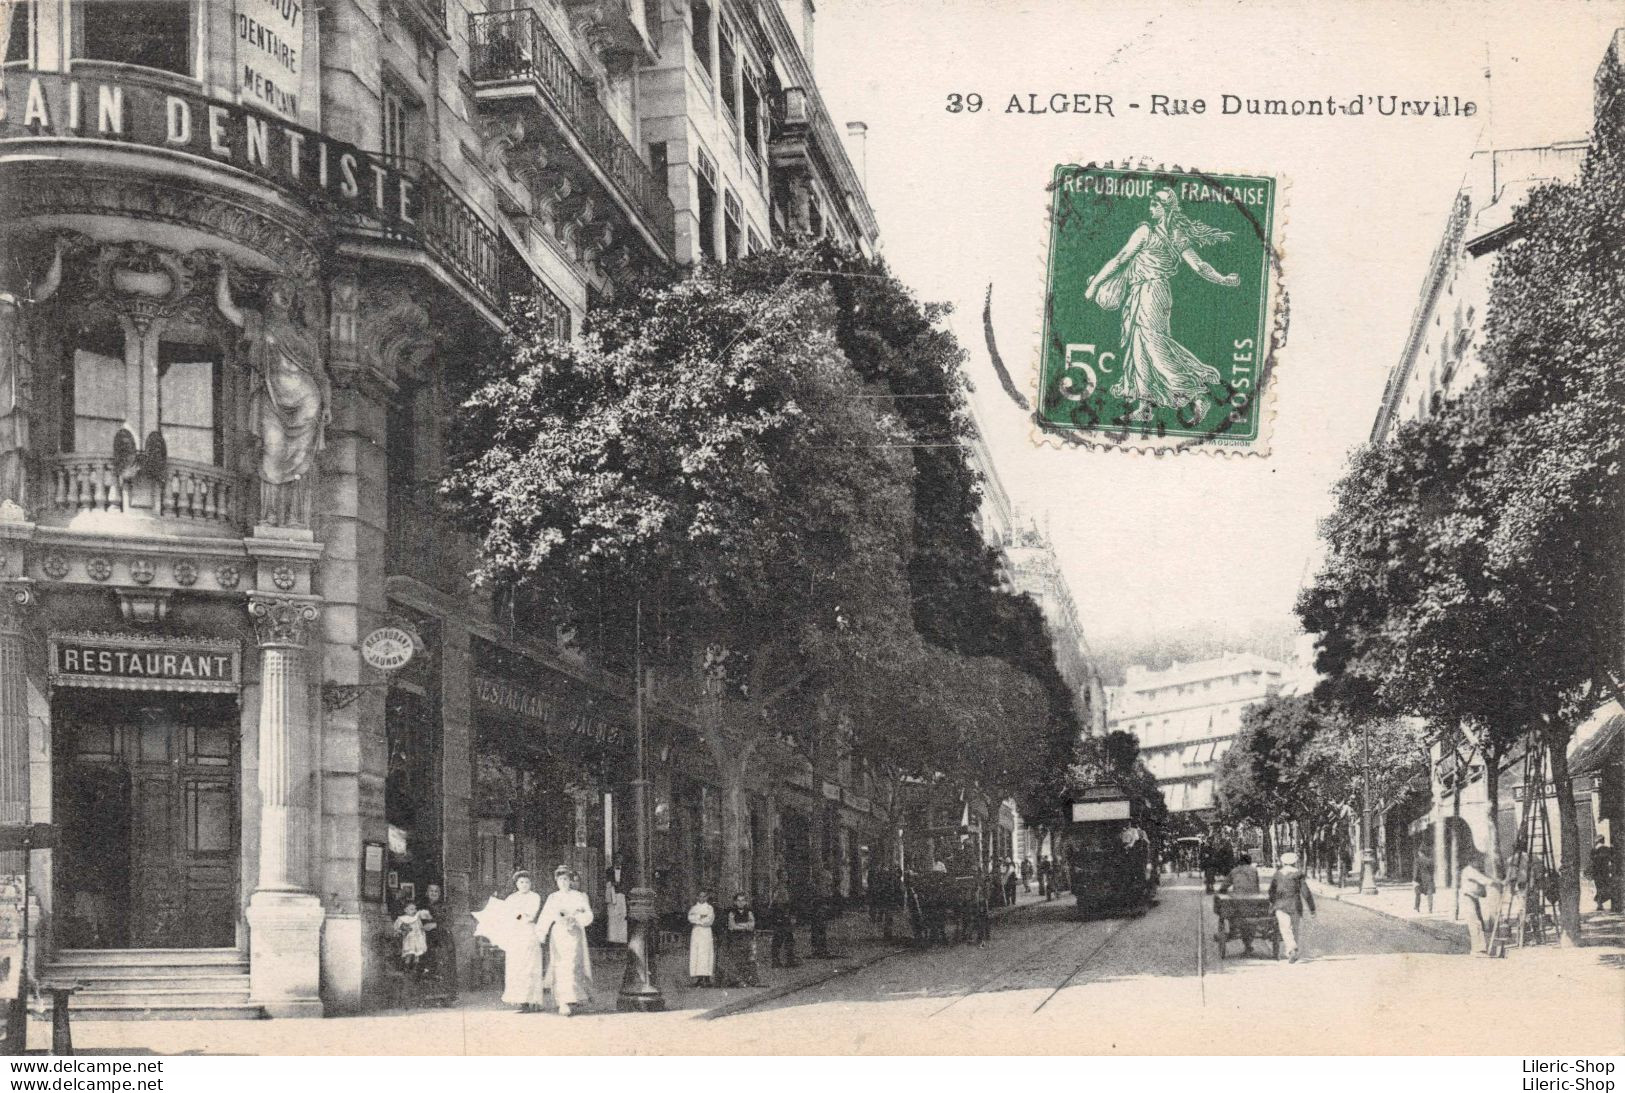 ALGER - Rue Durmont-d-'Urville - Restaurant Jaunon - Tramway Cpa  14 05 1914   ♥♥♥ - Algerien